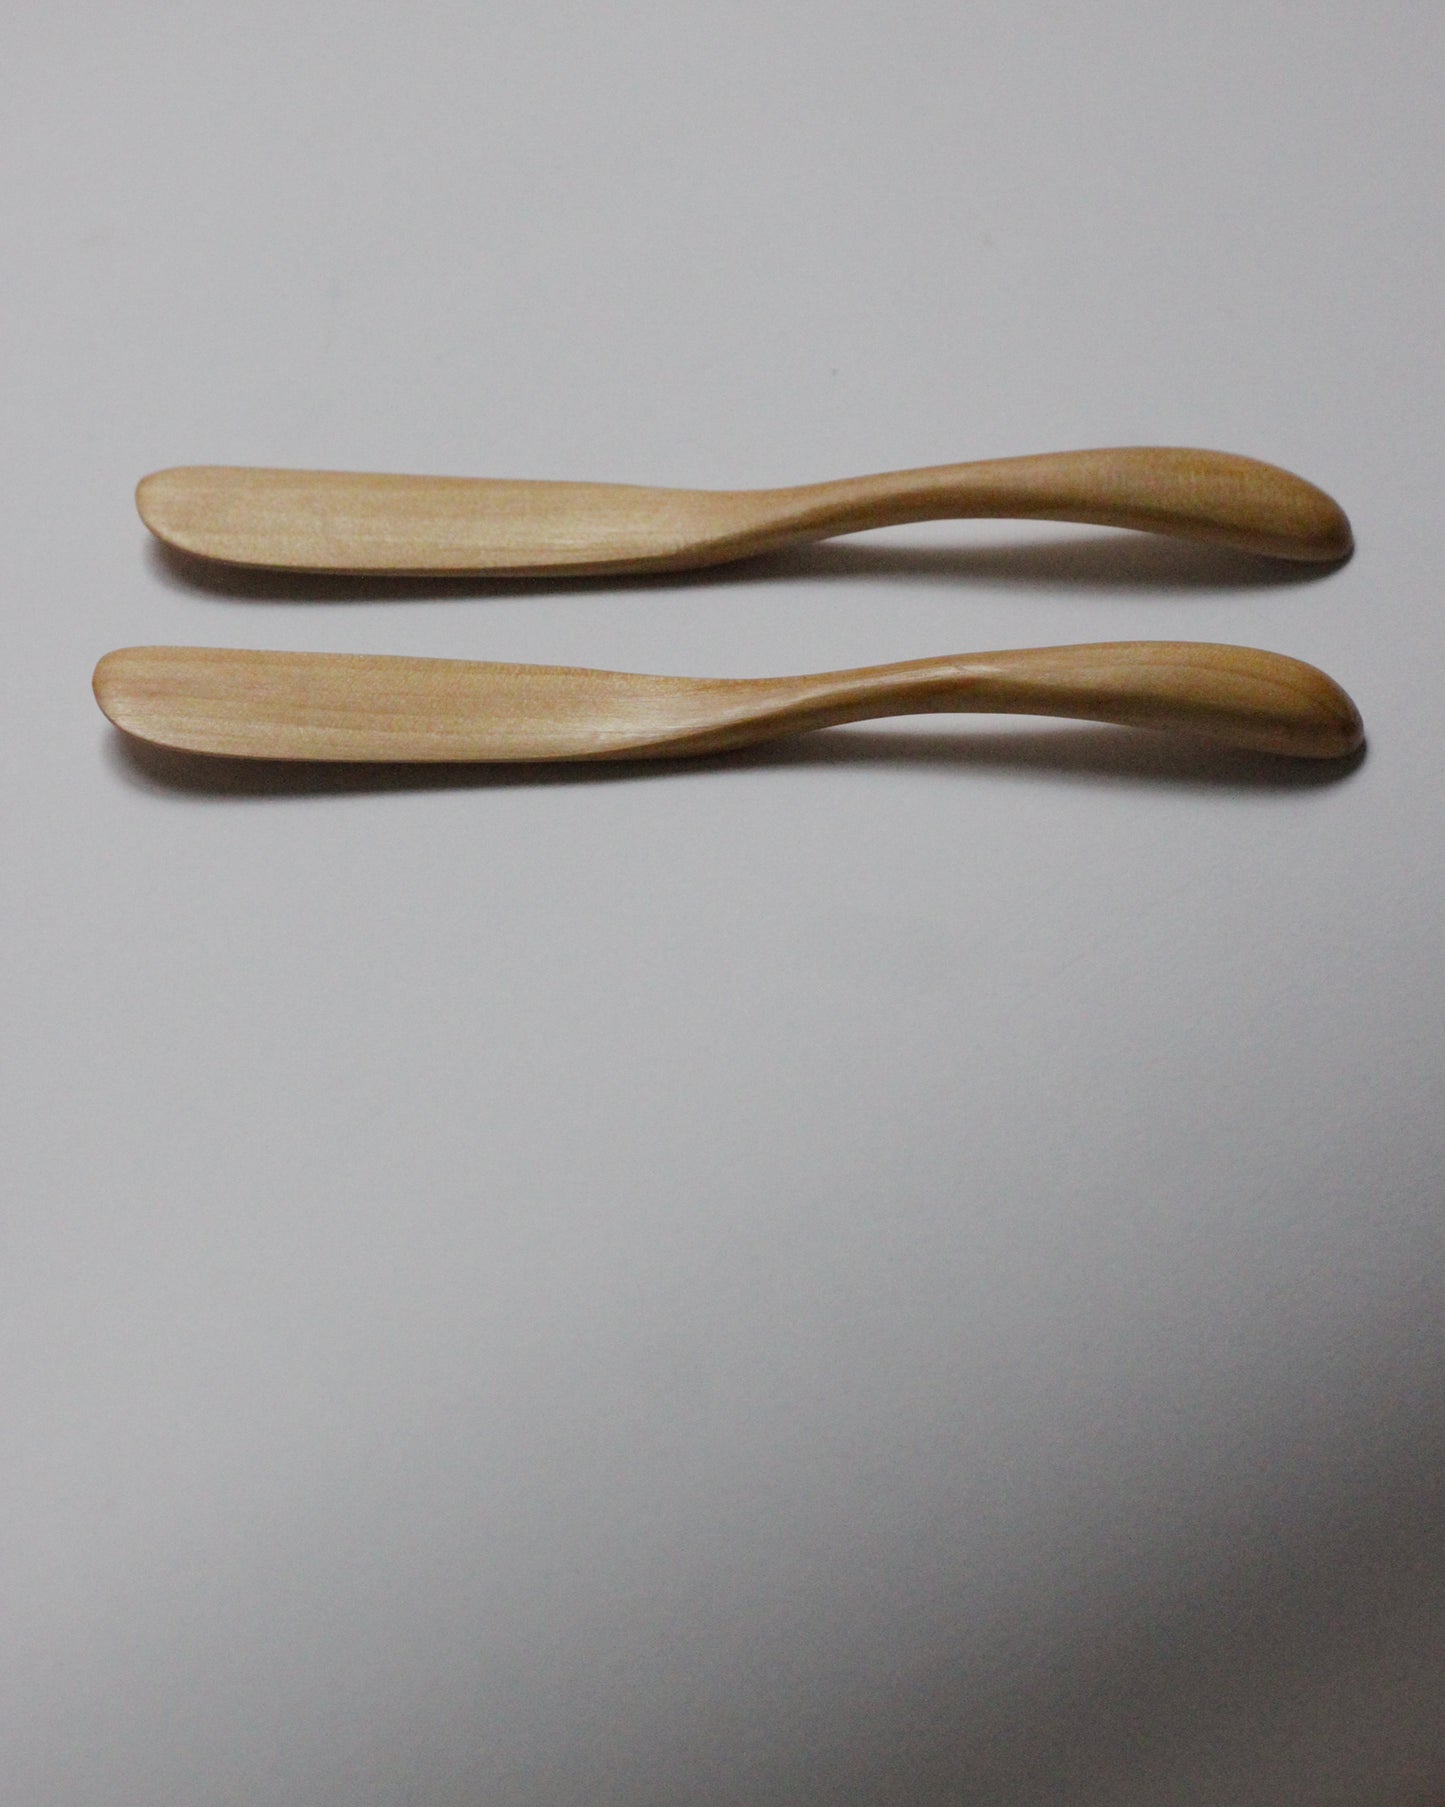 Wooden Spreaders - set of 2